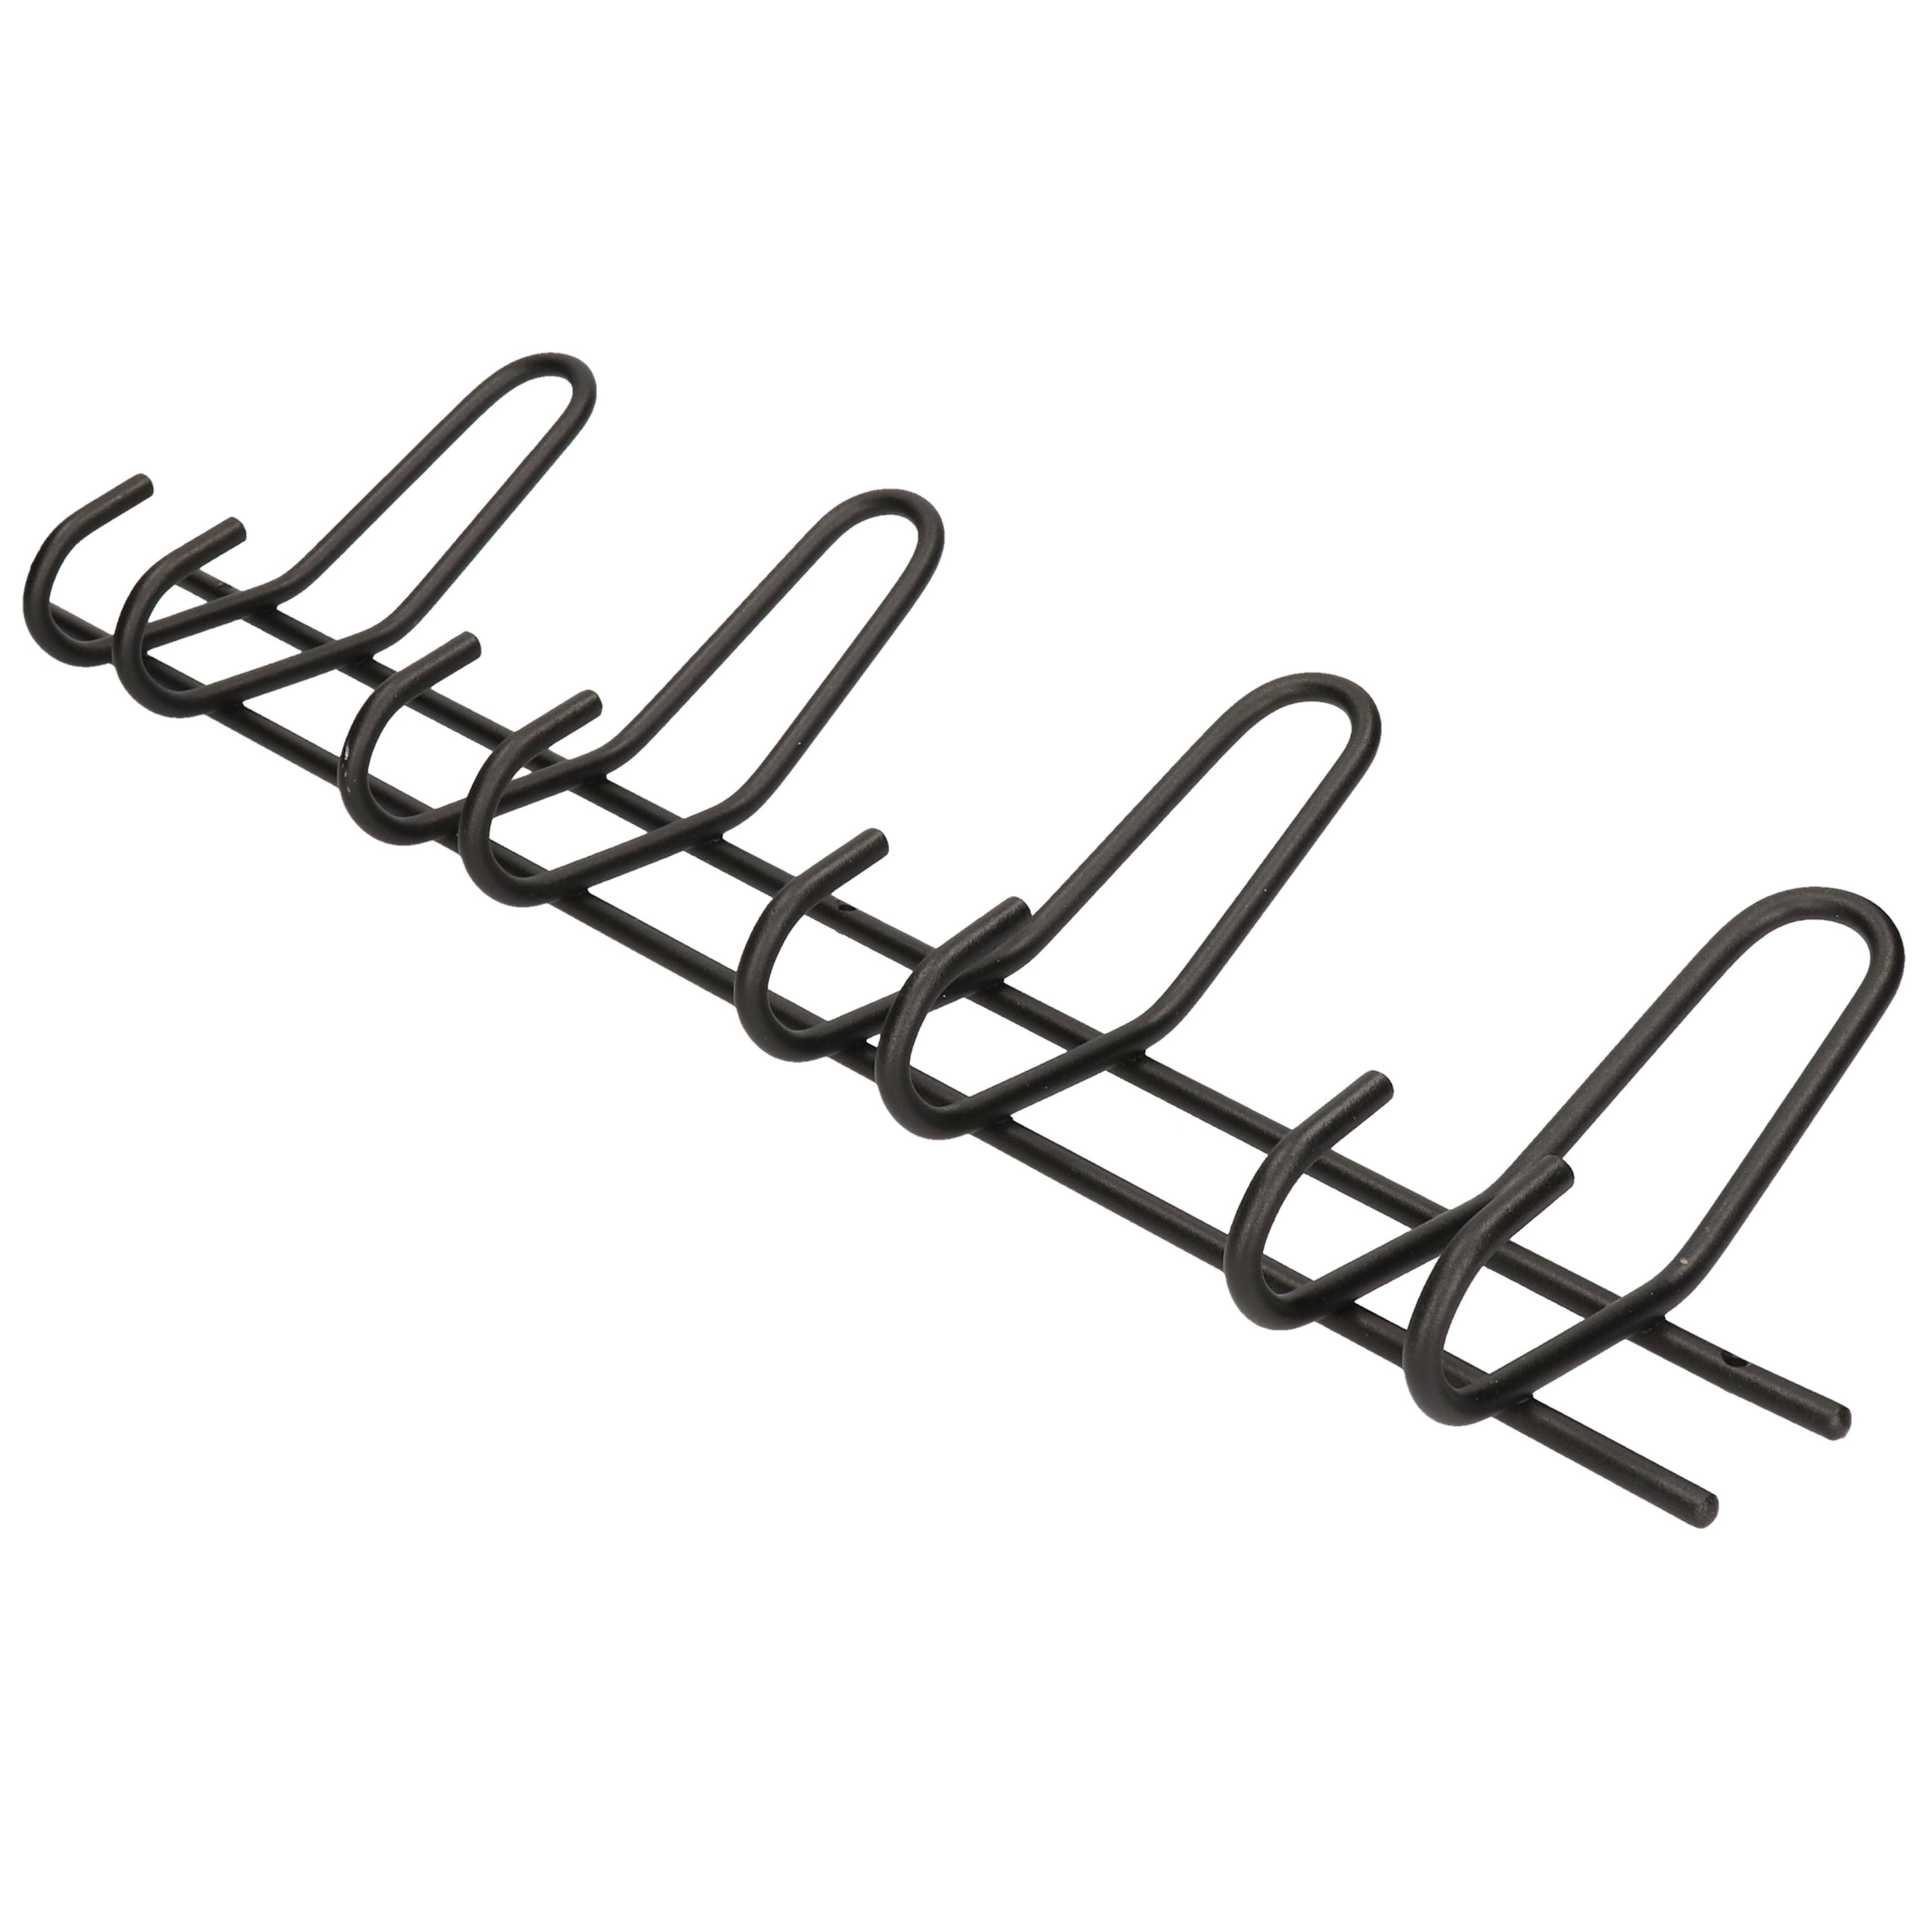 1x Luxe kapstokken-jashaken-wandkapstokken zwart metaal kapstok 4x dubbele brede haak 16 x 53 cm